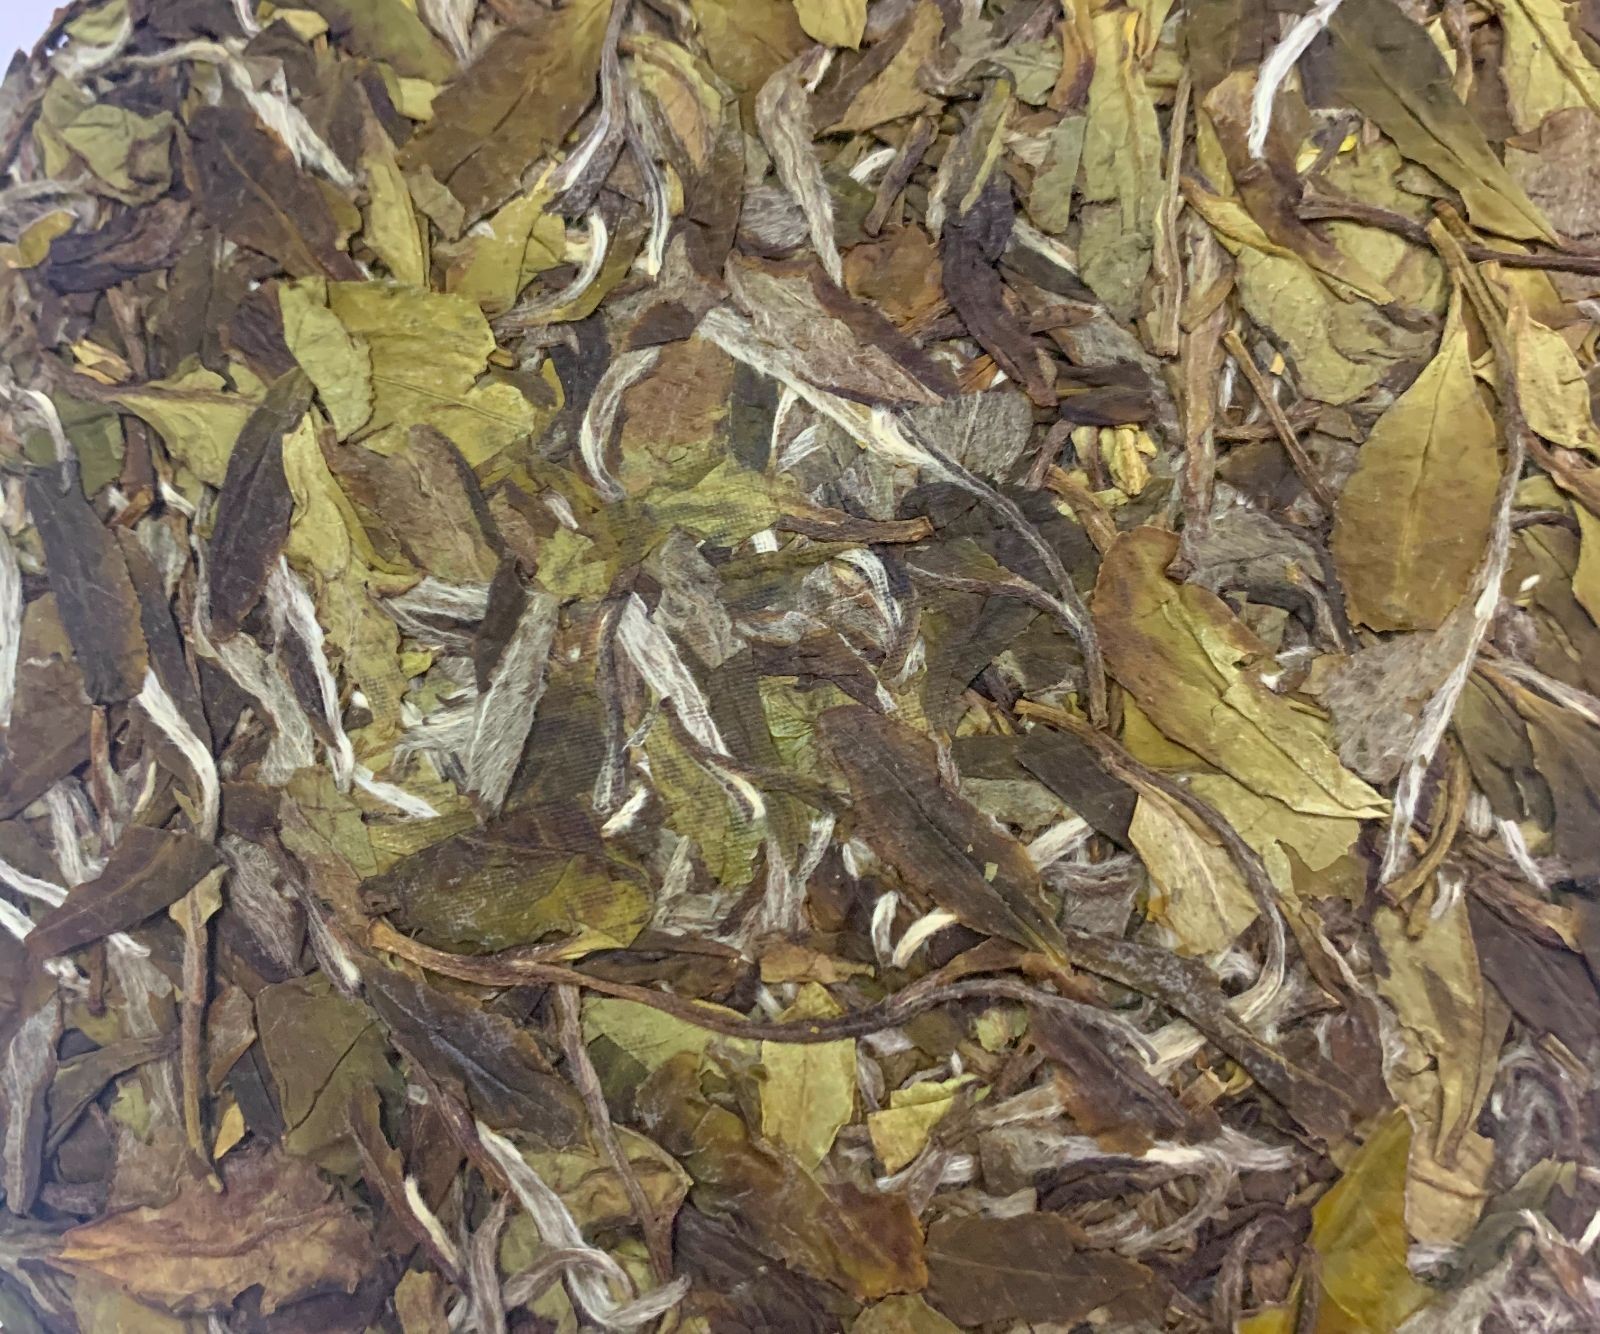 COTV直播-福建省益馨茗茶业有限公司生产销售福鼎白茶、白牡丹茶、大红袍茶、茉莉花茶及各种绿茶、红茶系列产品，欢迎大家光临！